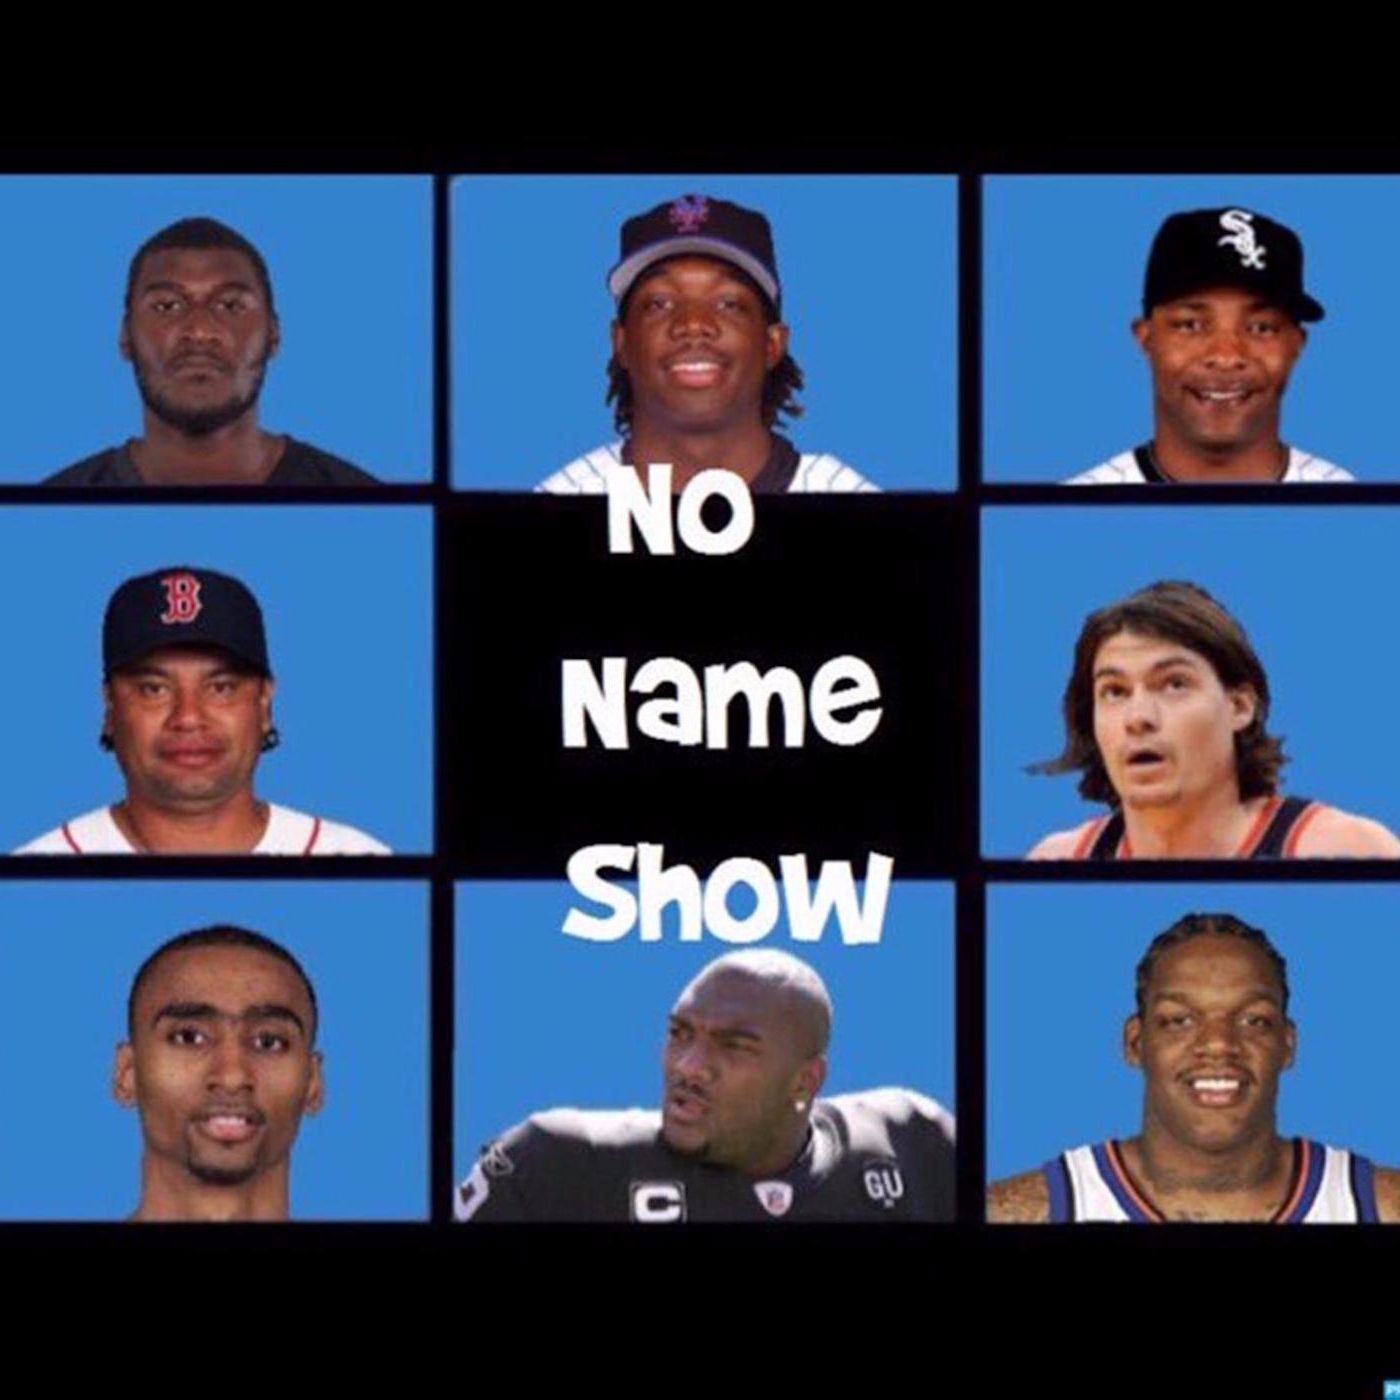 No Name Show